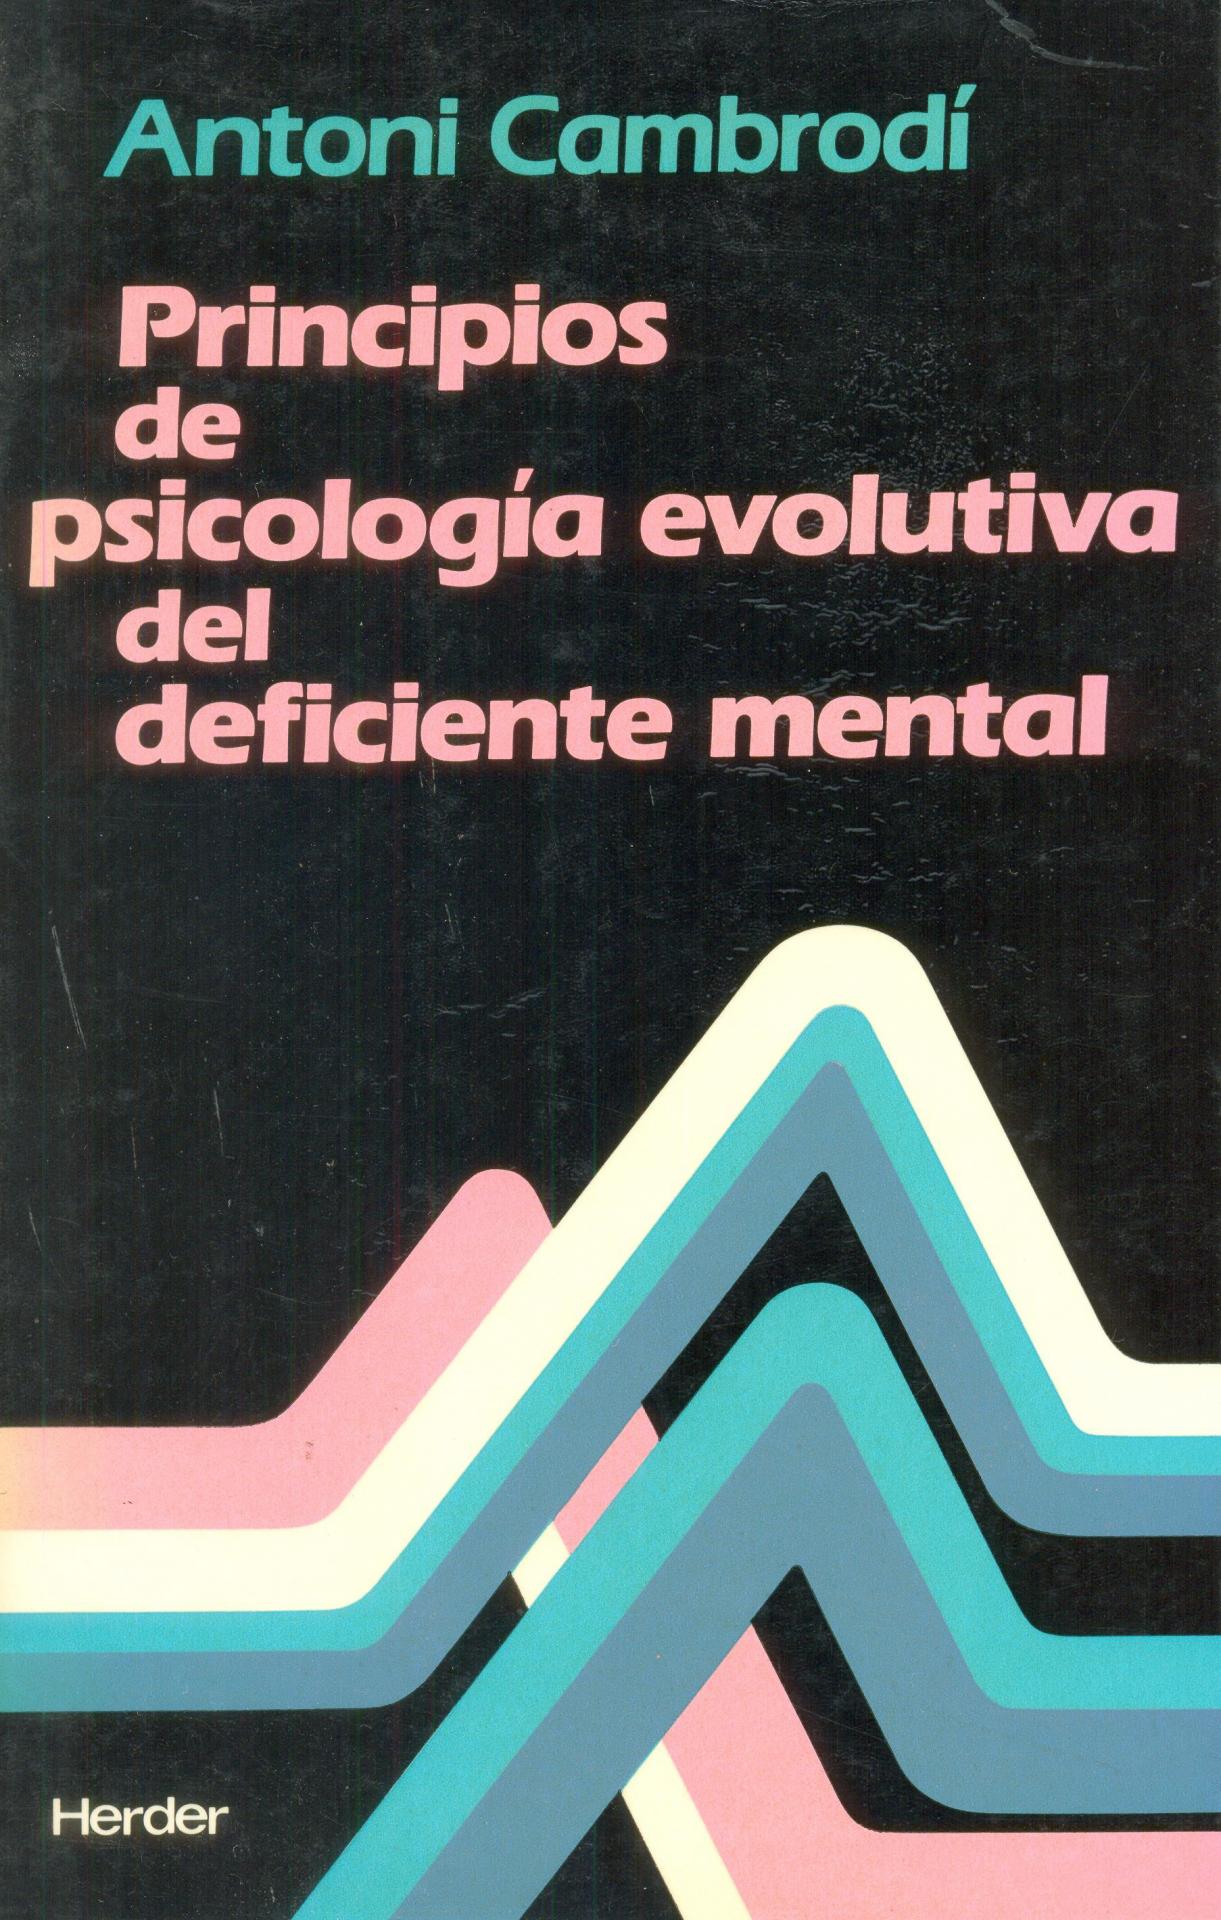 PRINCIPIOS DE PSICOLOGÍA EVOLUTIVA DEL DEFICIENTE MENTAL. Cambrodí, A. 